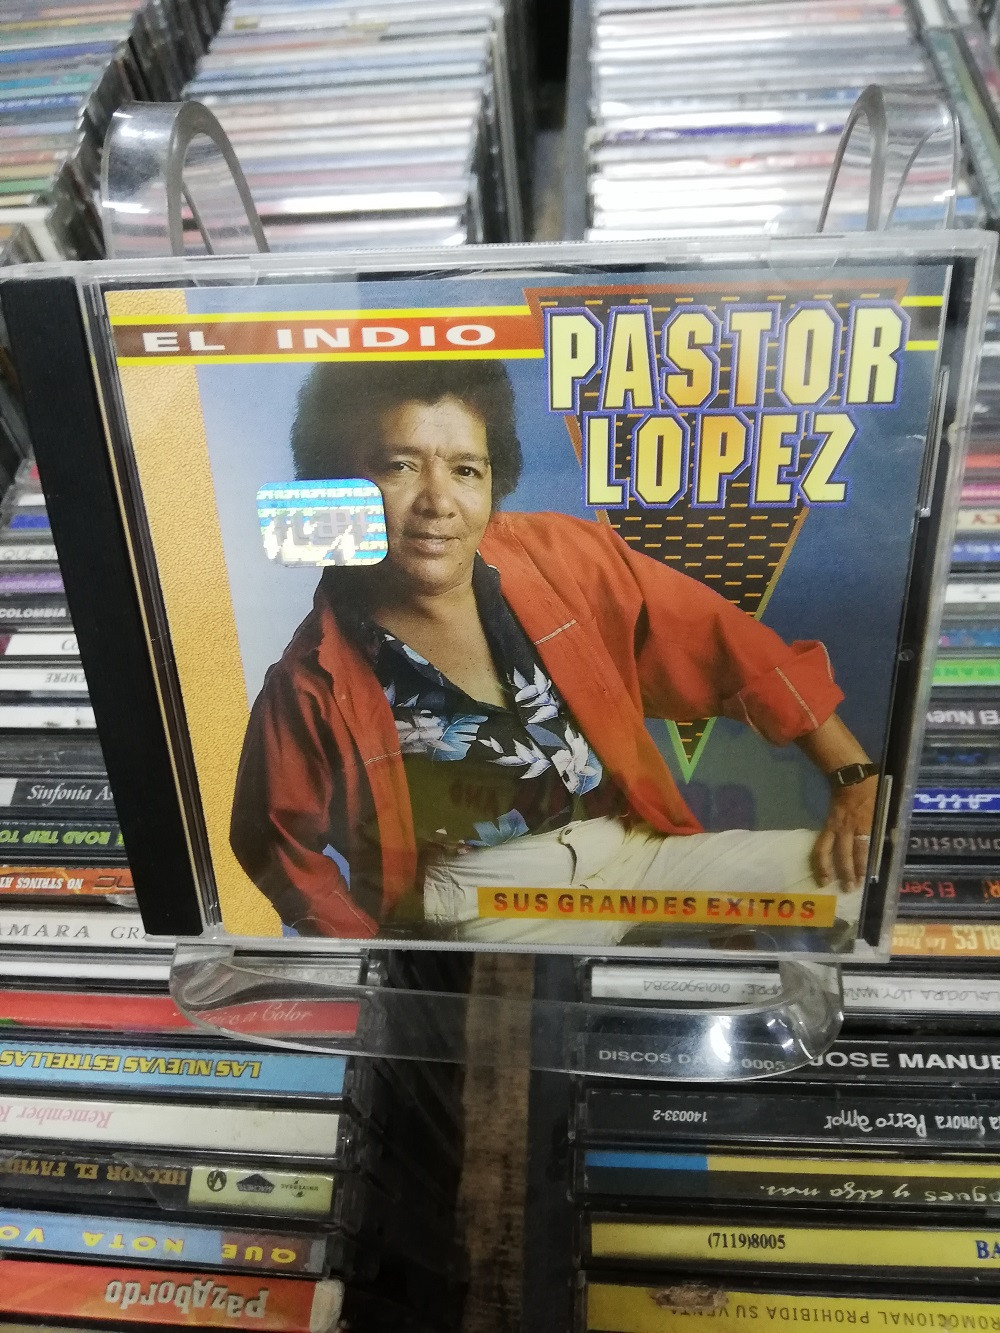 Imagen CD EL INDIO PASTOR LOPEZ - SUS GRANDES EXITOS 1